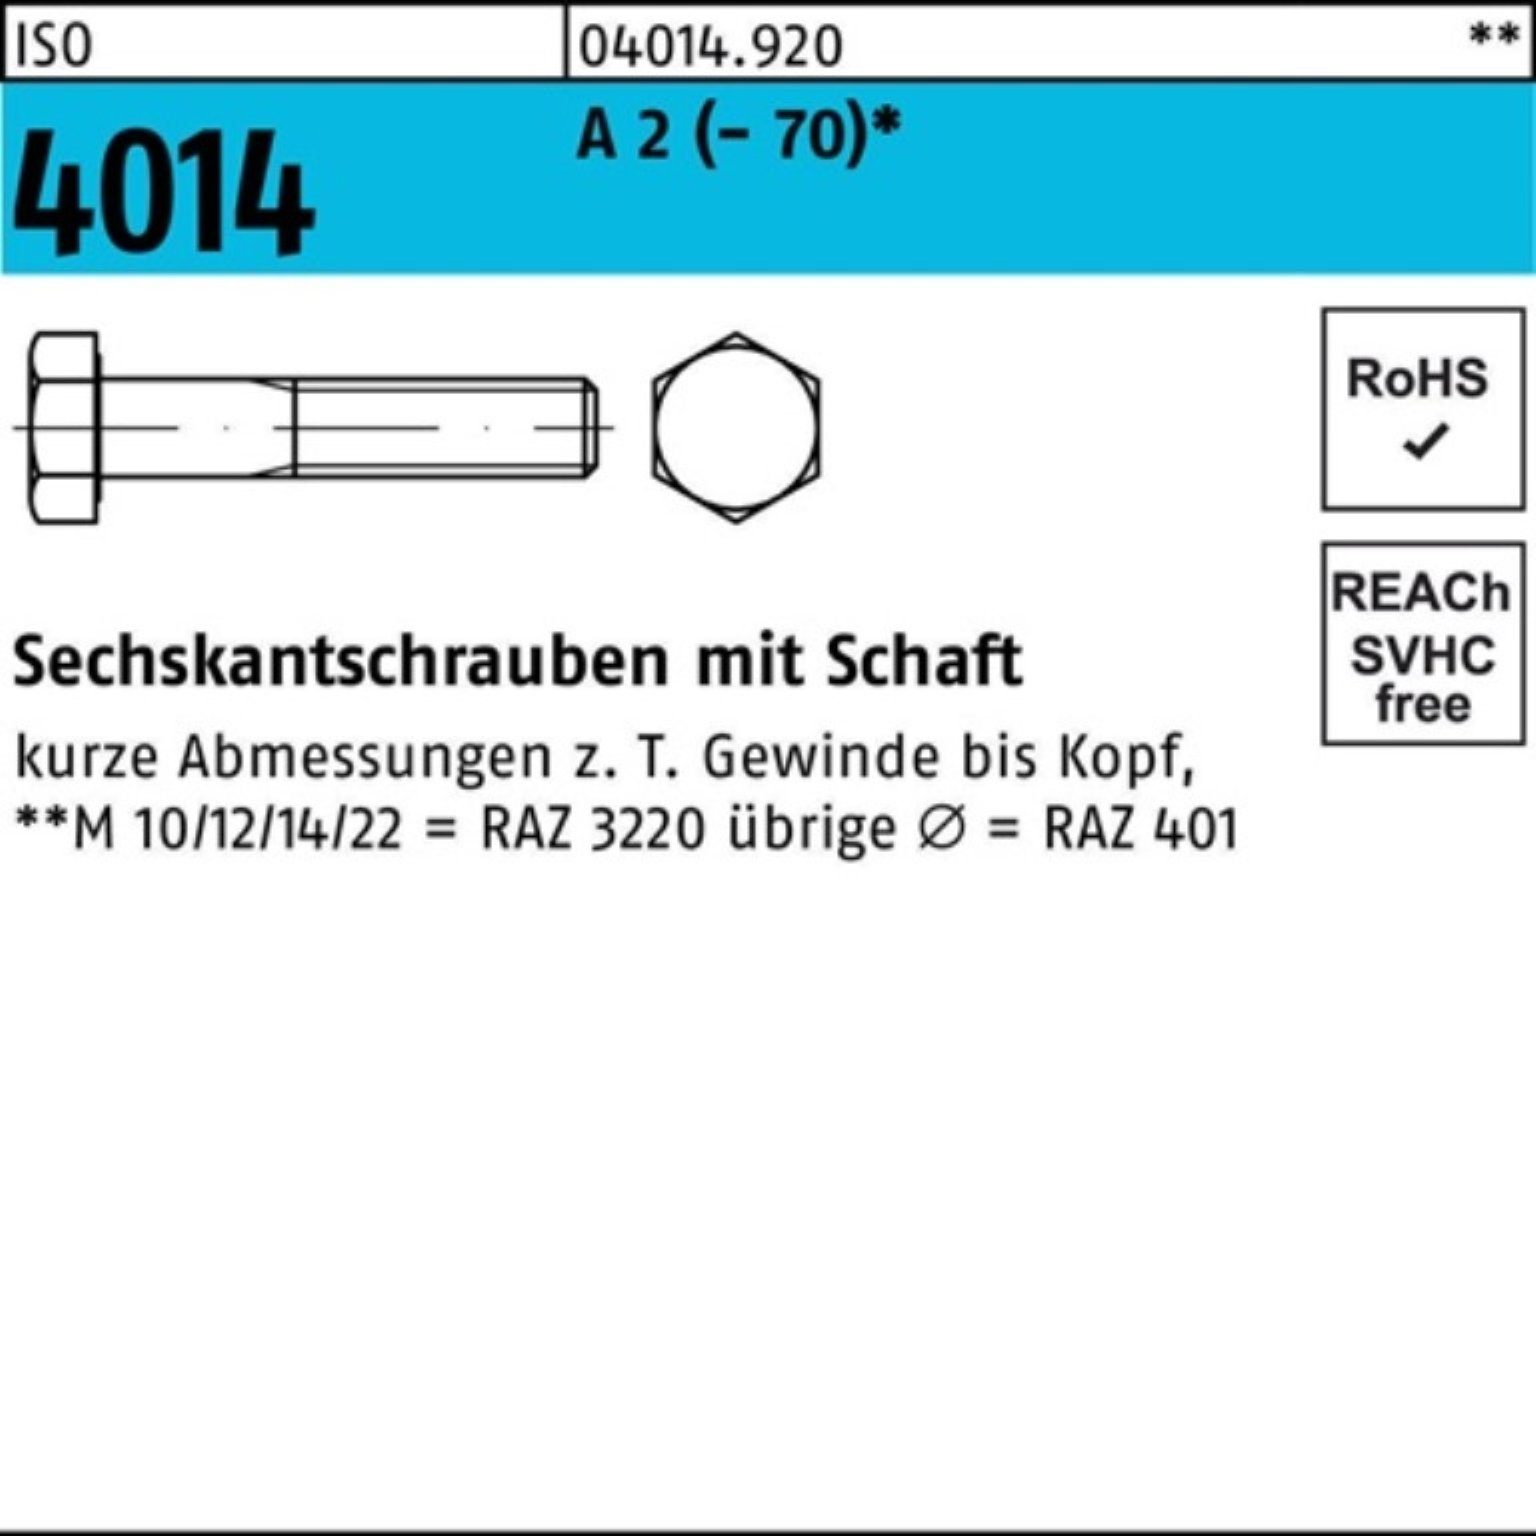 Bufab Sechskantschraube 100er 70 4014 Pack A Schaft 100 2 St M6x ISO (70) Sechskantschraube